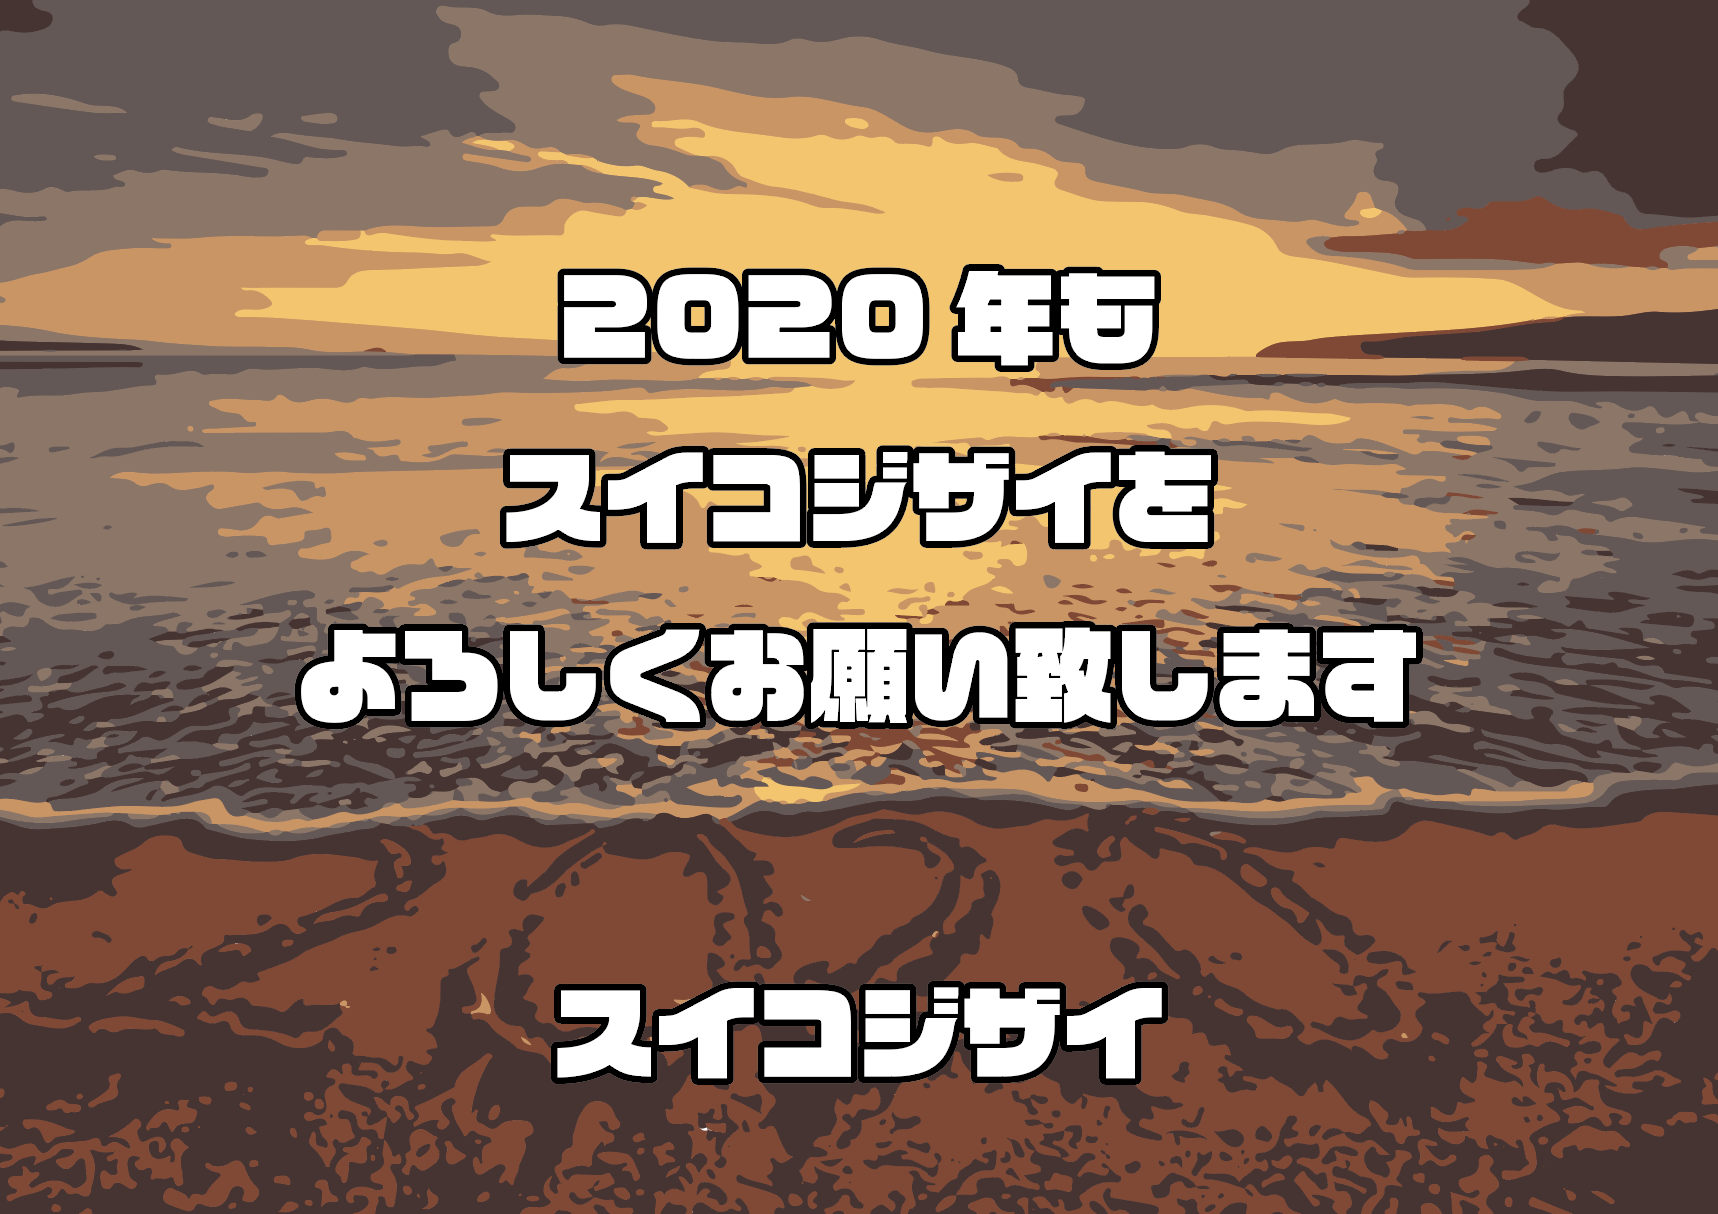 スクリーンショット 2020-01-05 0.09.27